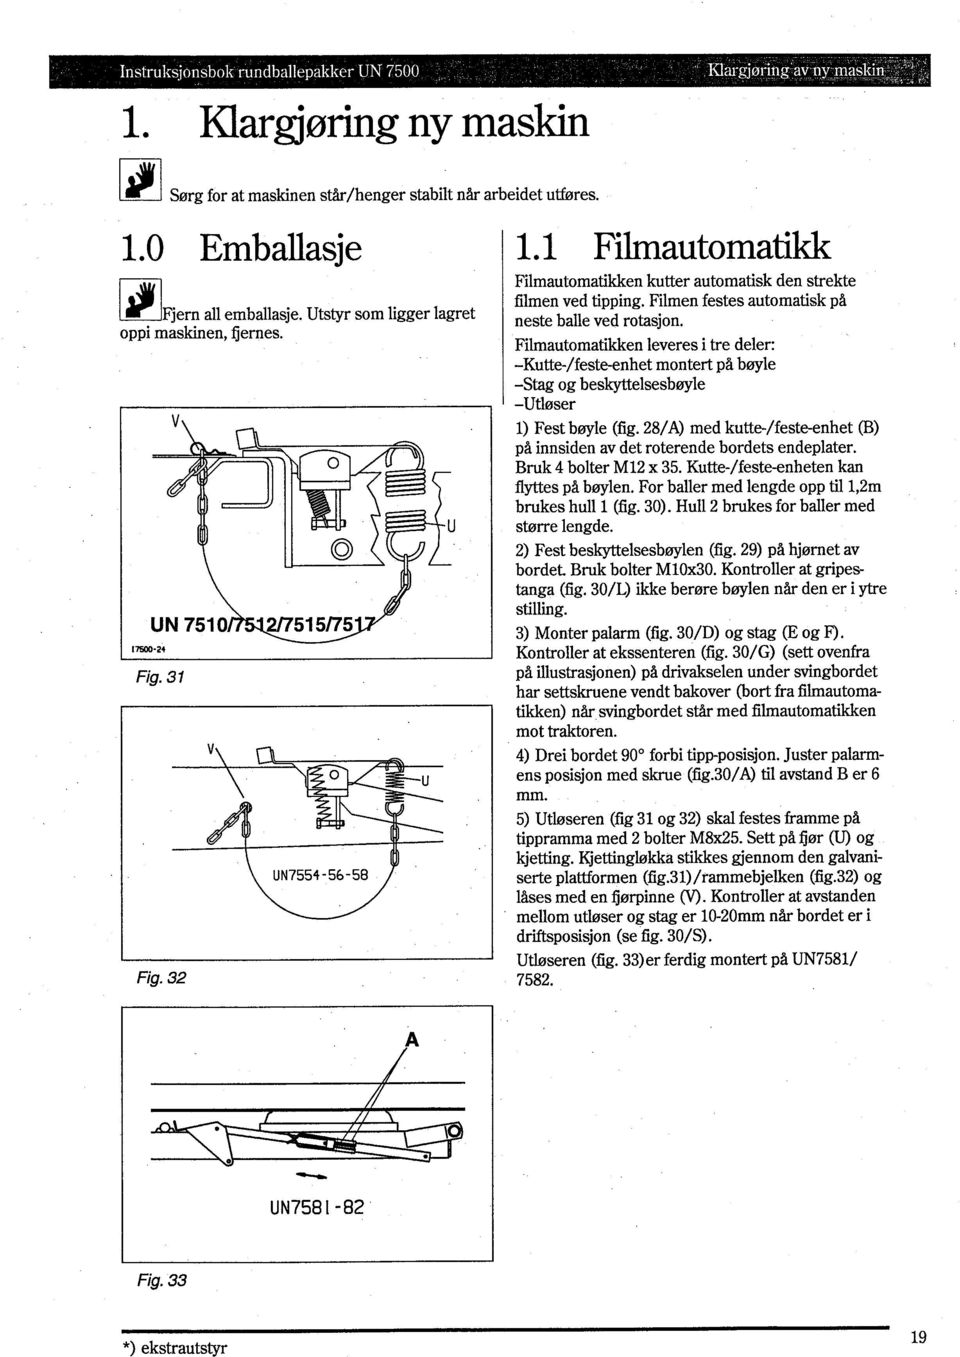 Filmautomatikken leveres i tre deler: -Kutte-/feste-enhet montert på bwle -Stag og beskyttelsesbwle -Utlar ser 1) Fest bwle (fig.